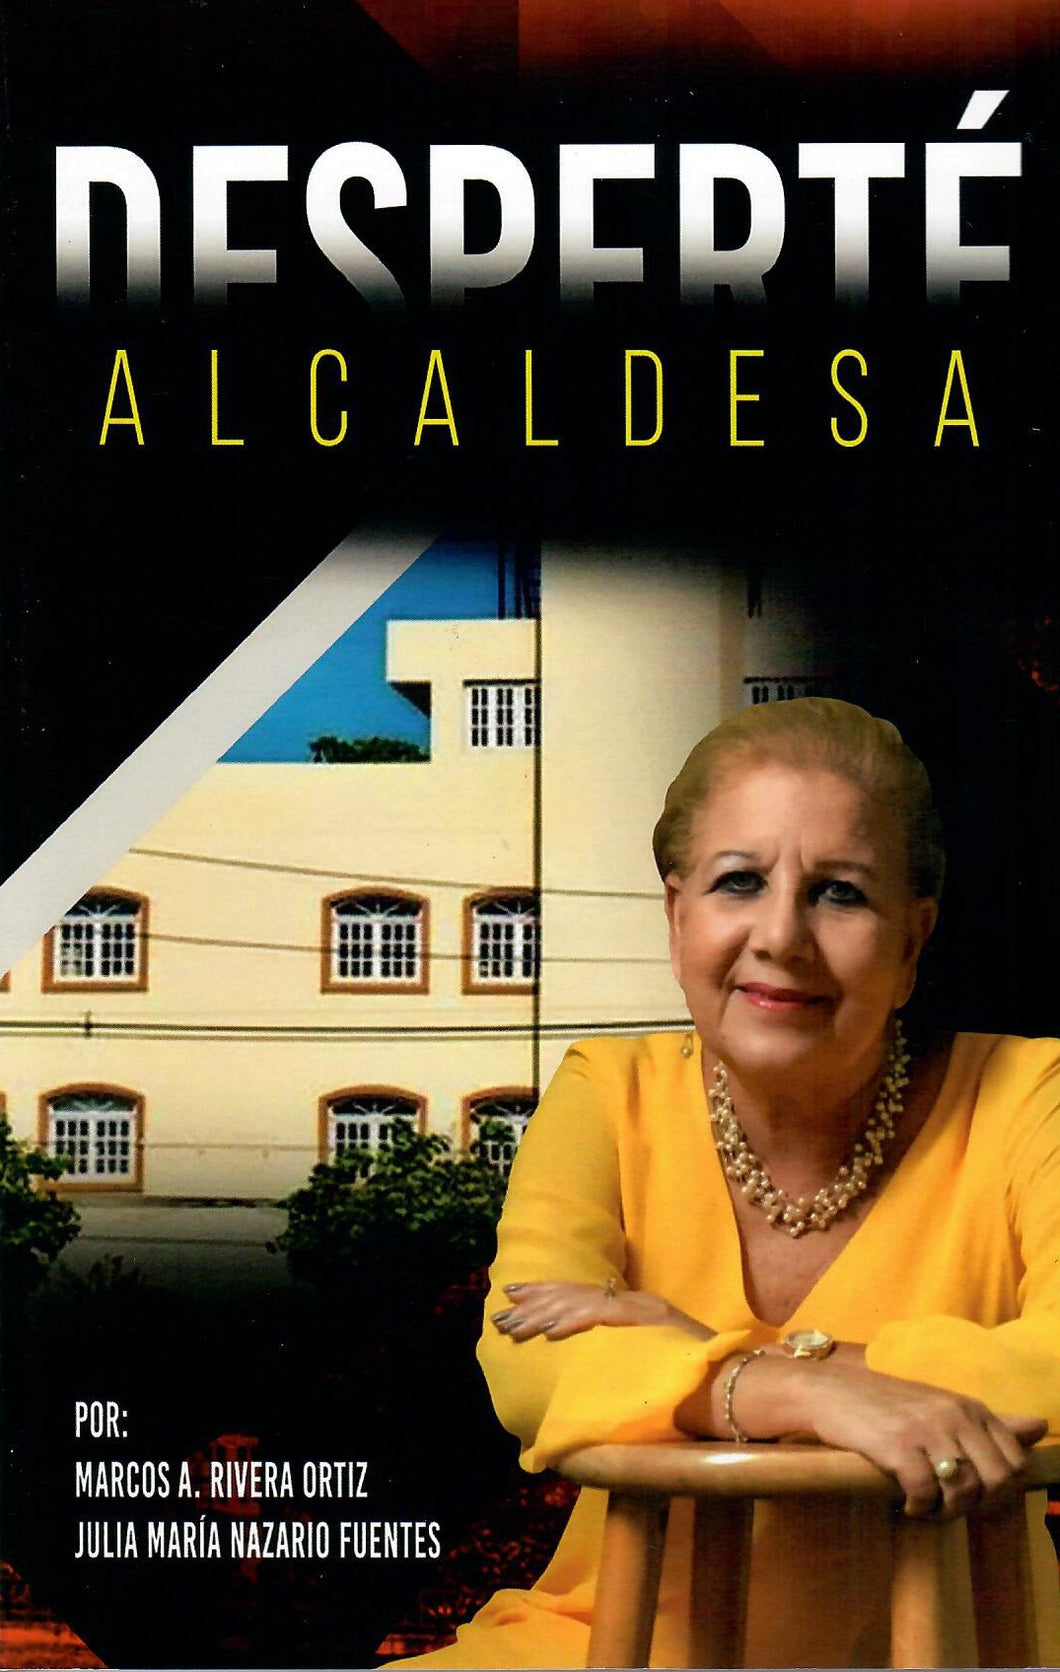 DESPERTÉ ALCALDESA - Julia María Nazario Fuentes y Marcos A. Rivera Ortiz